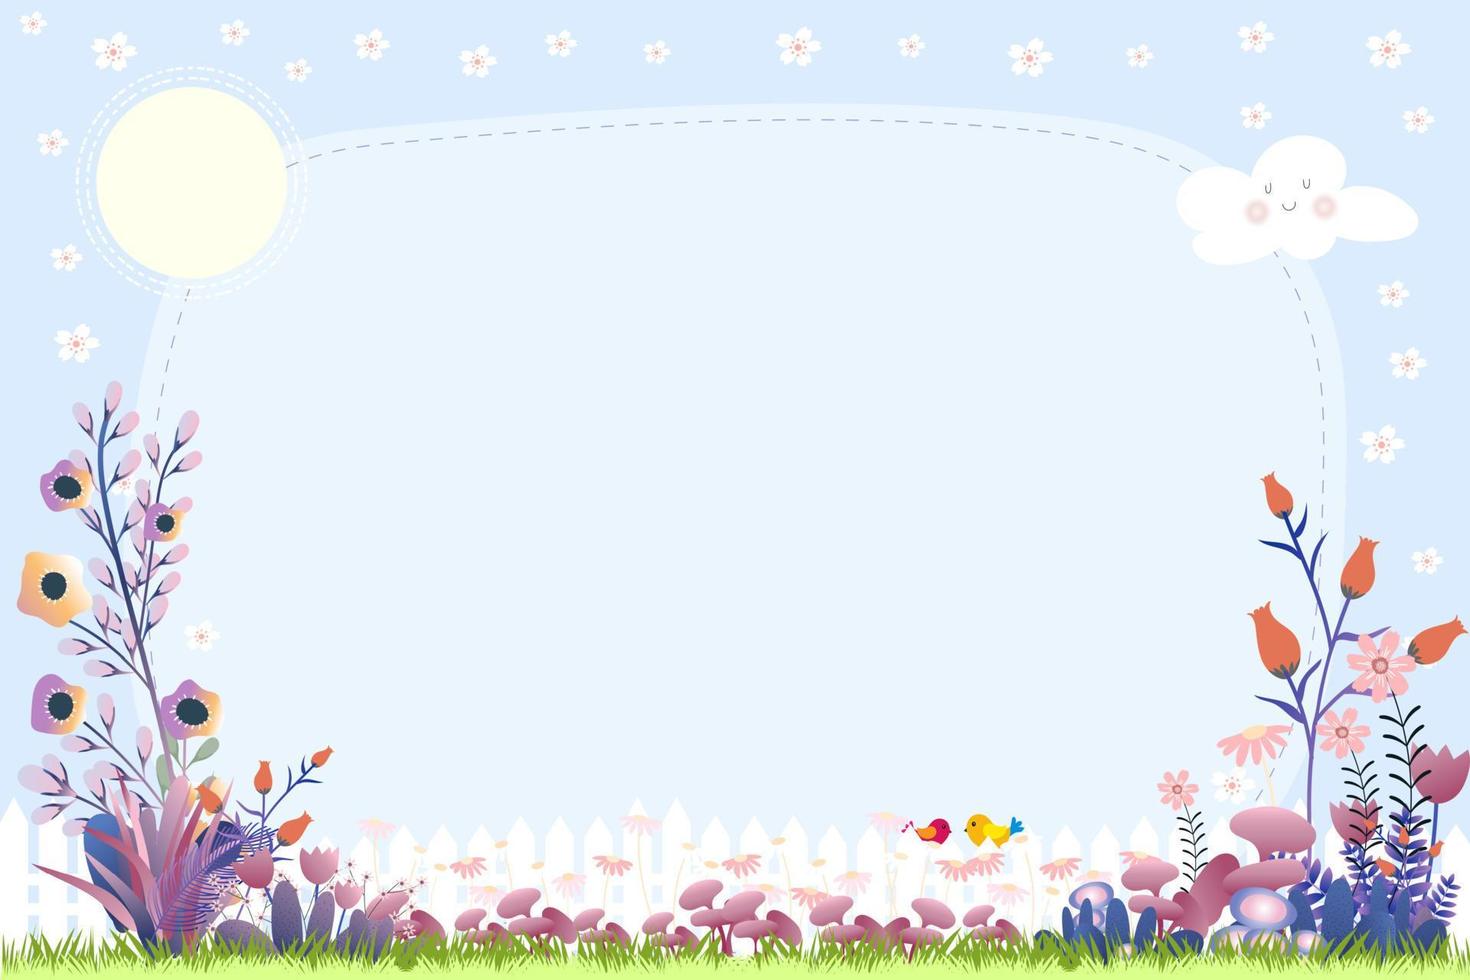 lente achtergrond met bloem in de tuin met kersenbloesem frame op blauwe lucht en kopieer ruimte voor tekst, vector banner schattig zomertafereel met bloemen grens, concept voor Pasen wenskaart